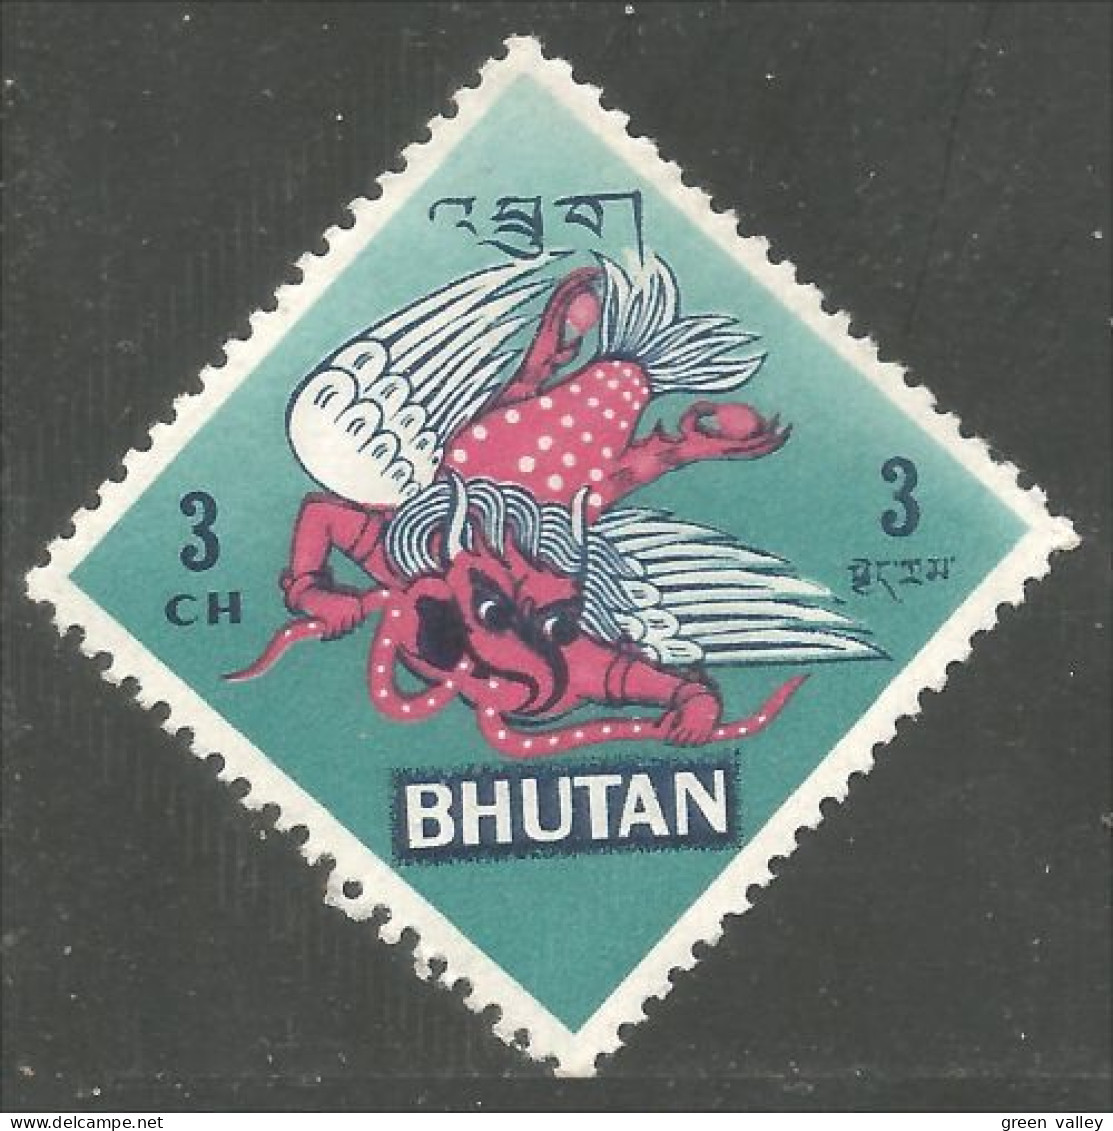 192 Bhutan Garuda Aigle Eagle Adler Aquila Mythologie Hindoue Mythology MH * Neuf (BHU-84a) - Mythology